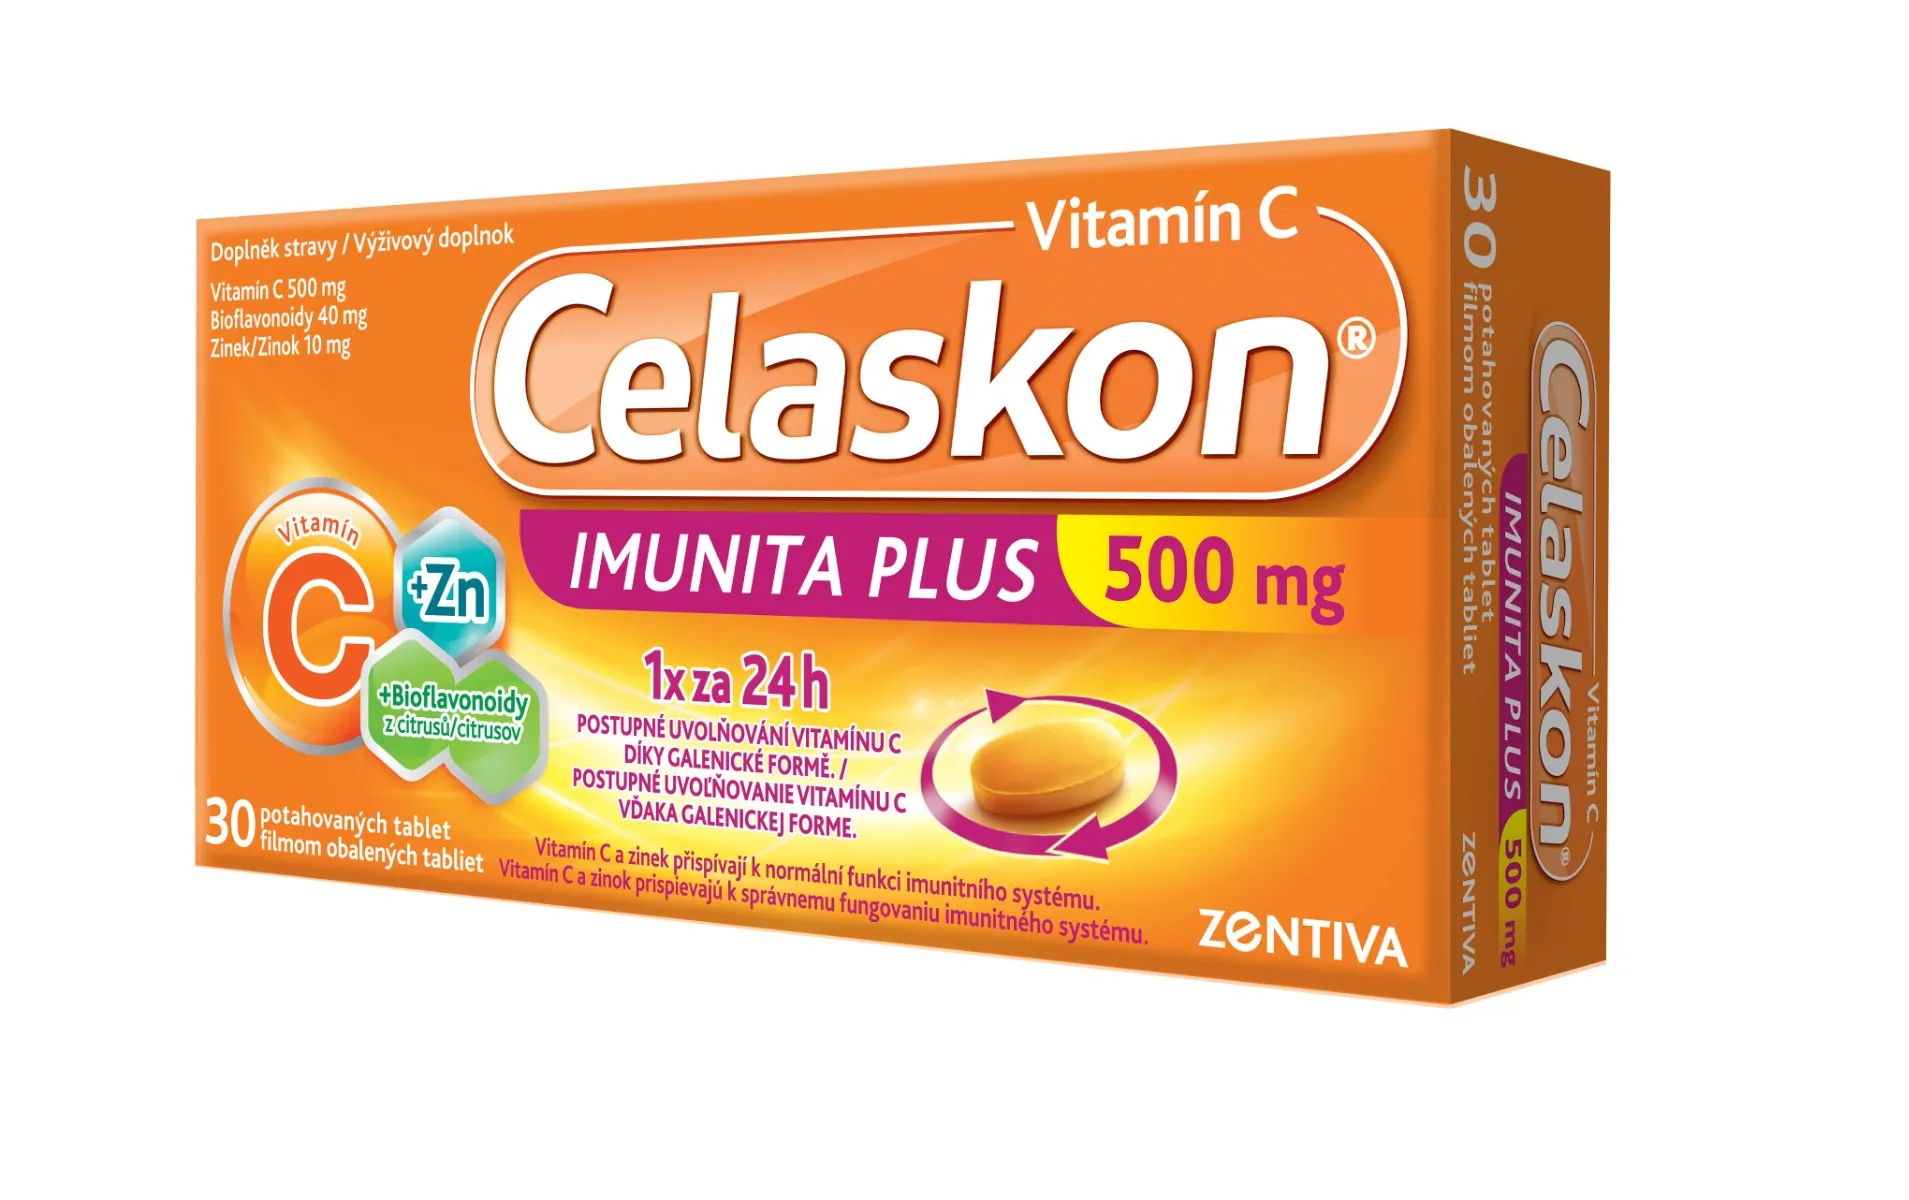 Celaskon Imunita Plus 500 mg 30 tablet